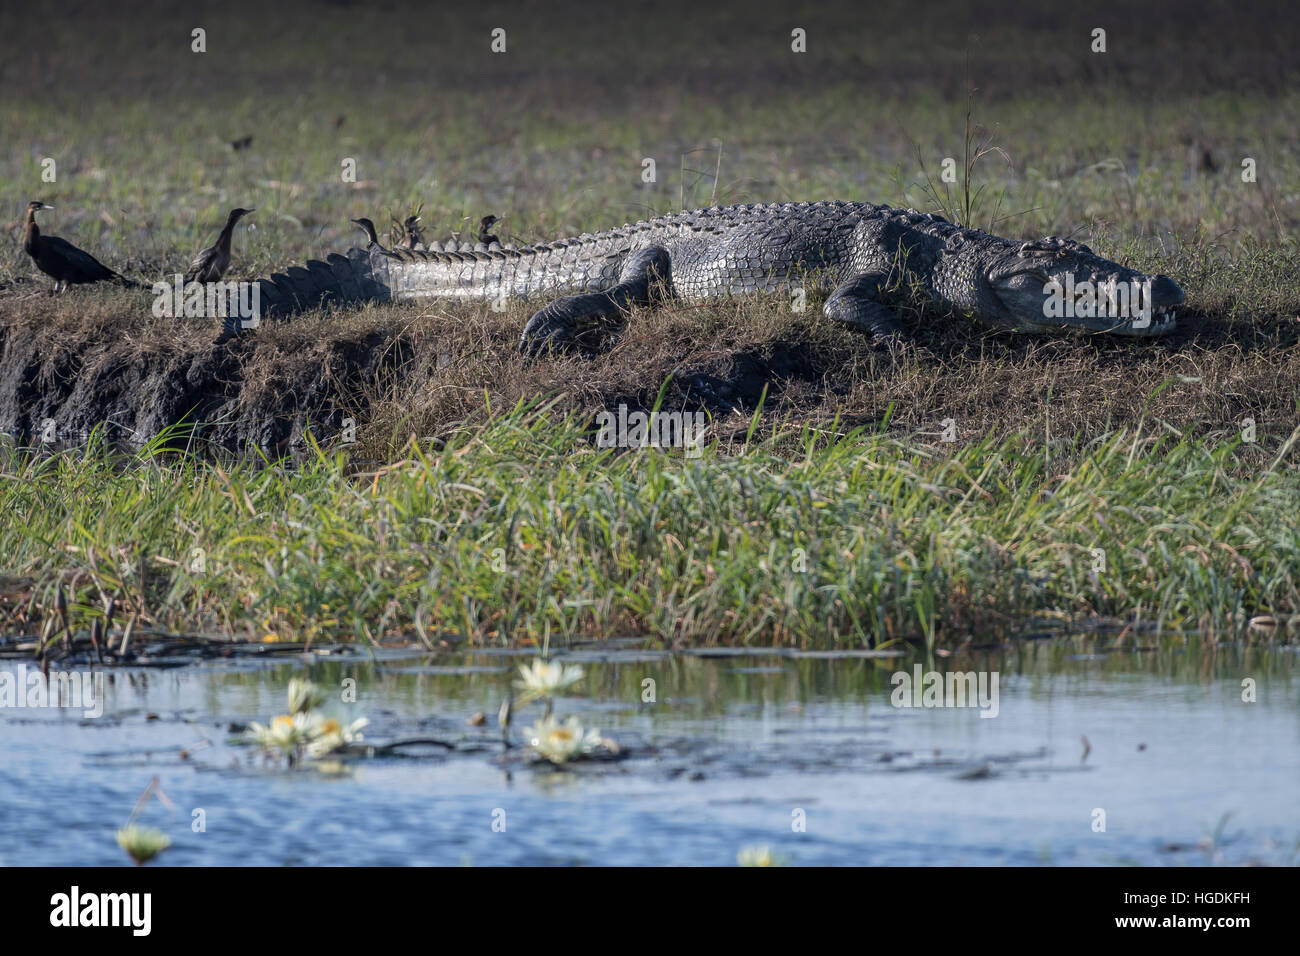 El cocodrilo del Nilo (crocodilus niloticus) en la costa, el Parque Nacional Chobe, río Chobe, Botswana Foto de stock